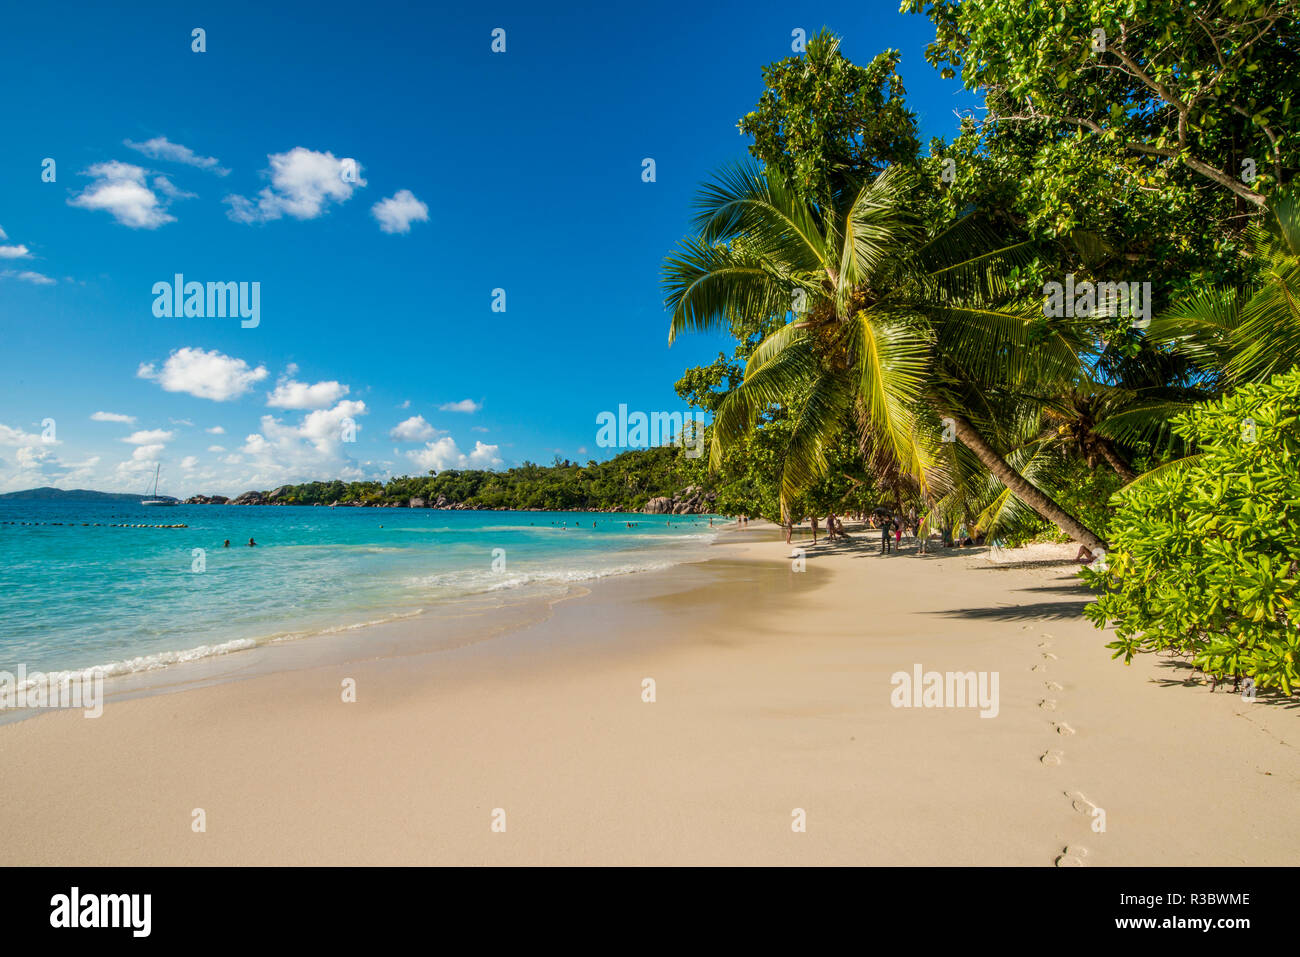 Plage d'Anse Lazio, Praslin, Seychelles, océan Indien. Banque D'Images